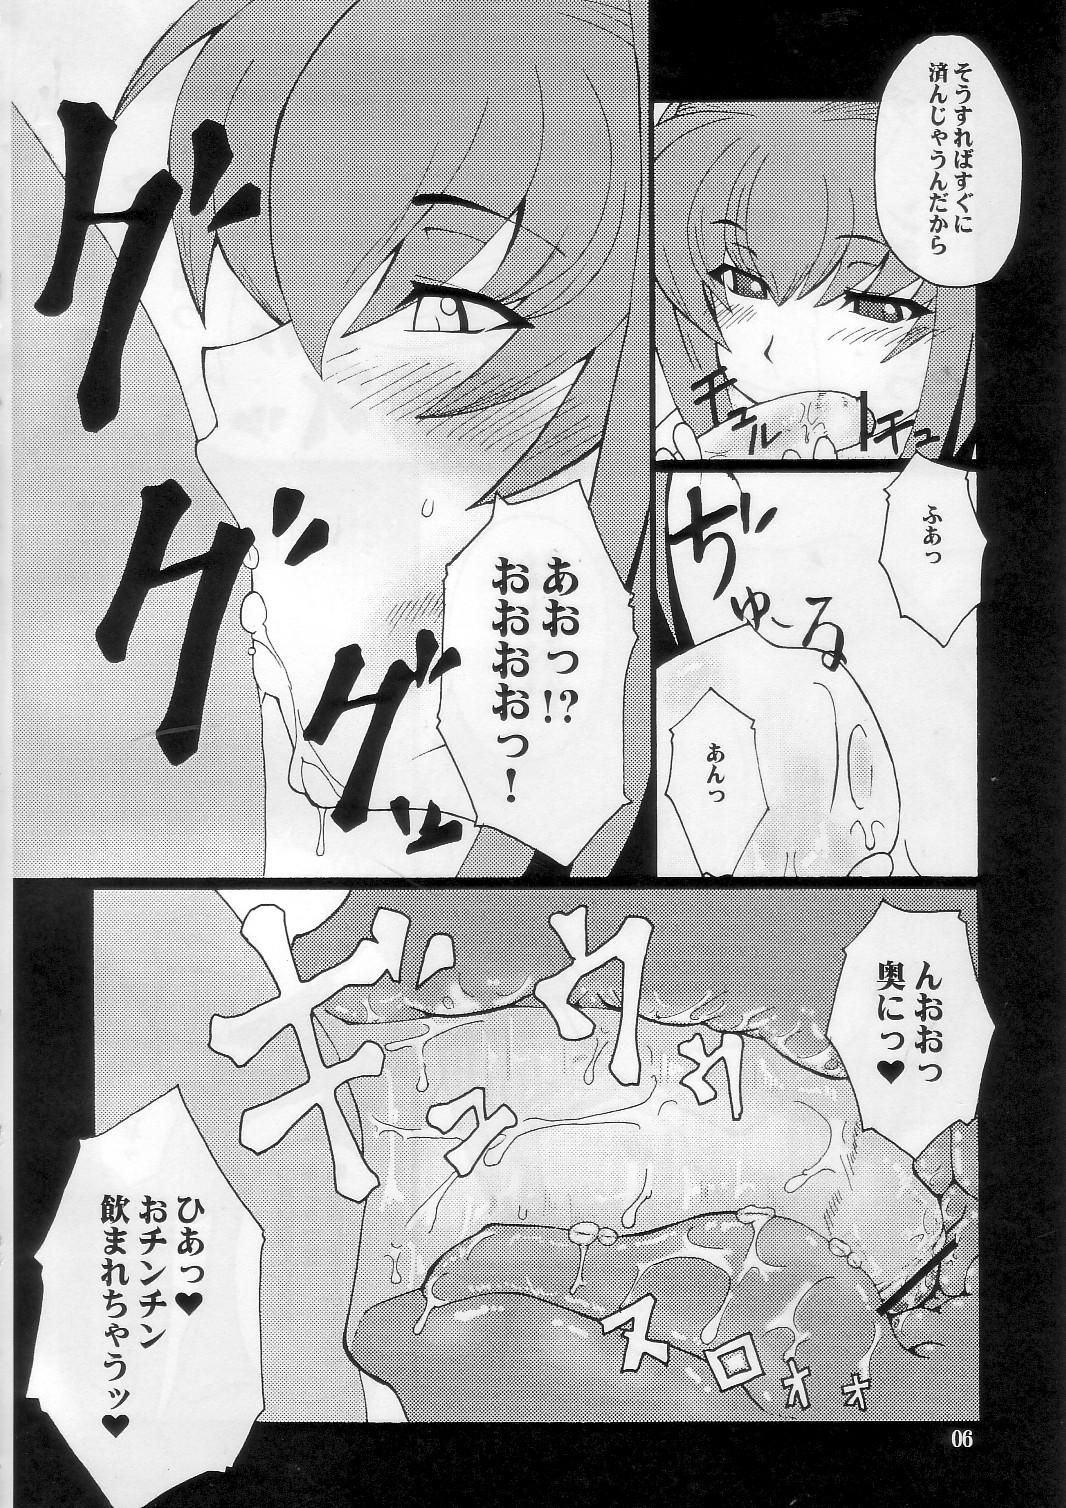 [Hanjuku Yude Tamago] Kyouki vol.5 (Kanon) page 6 full